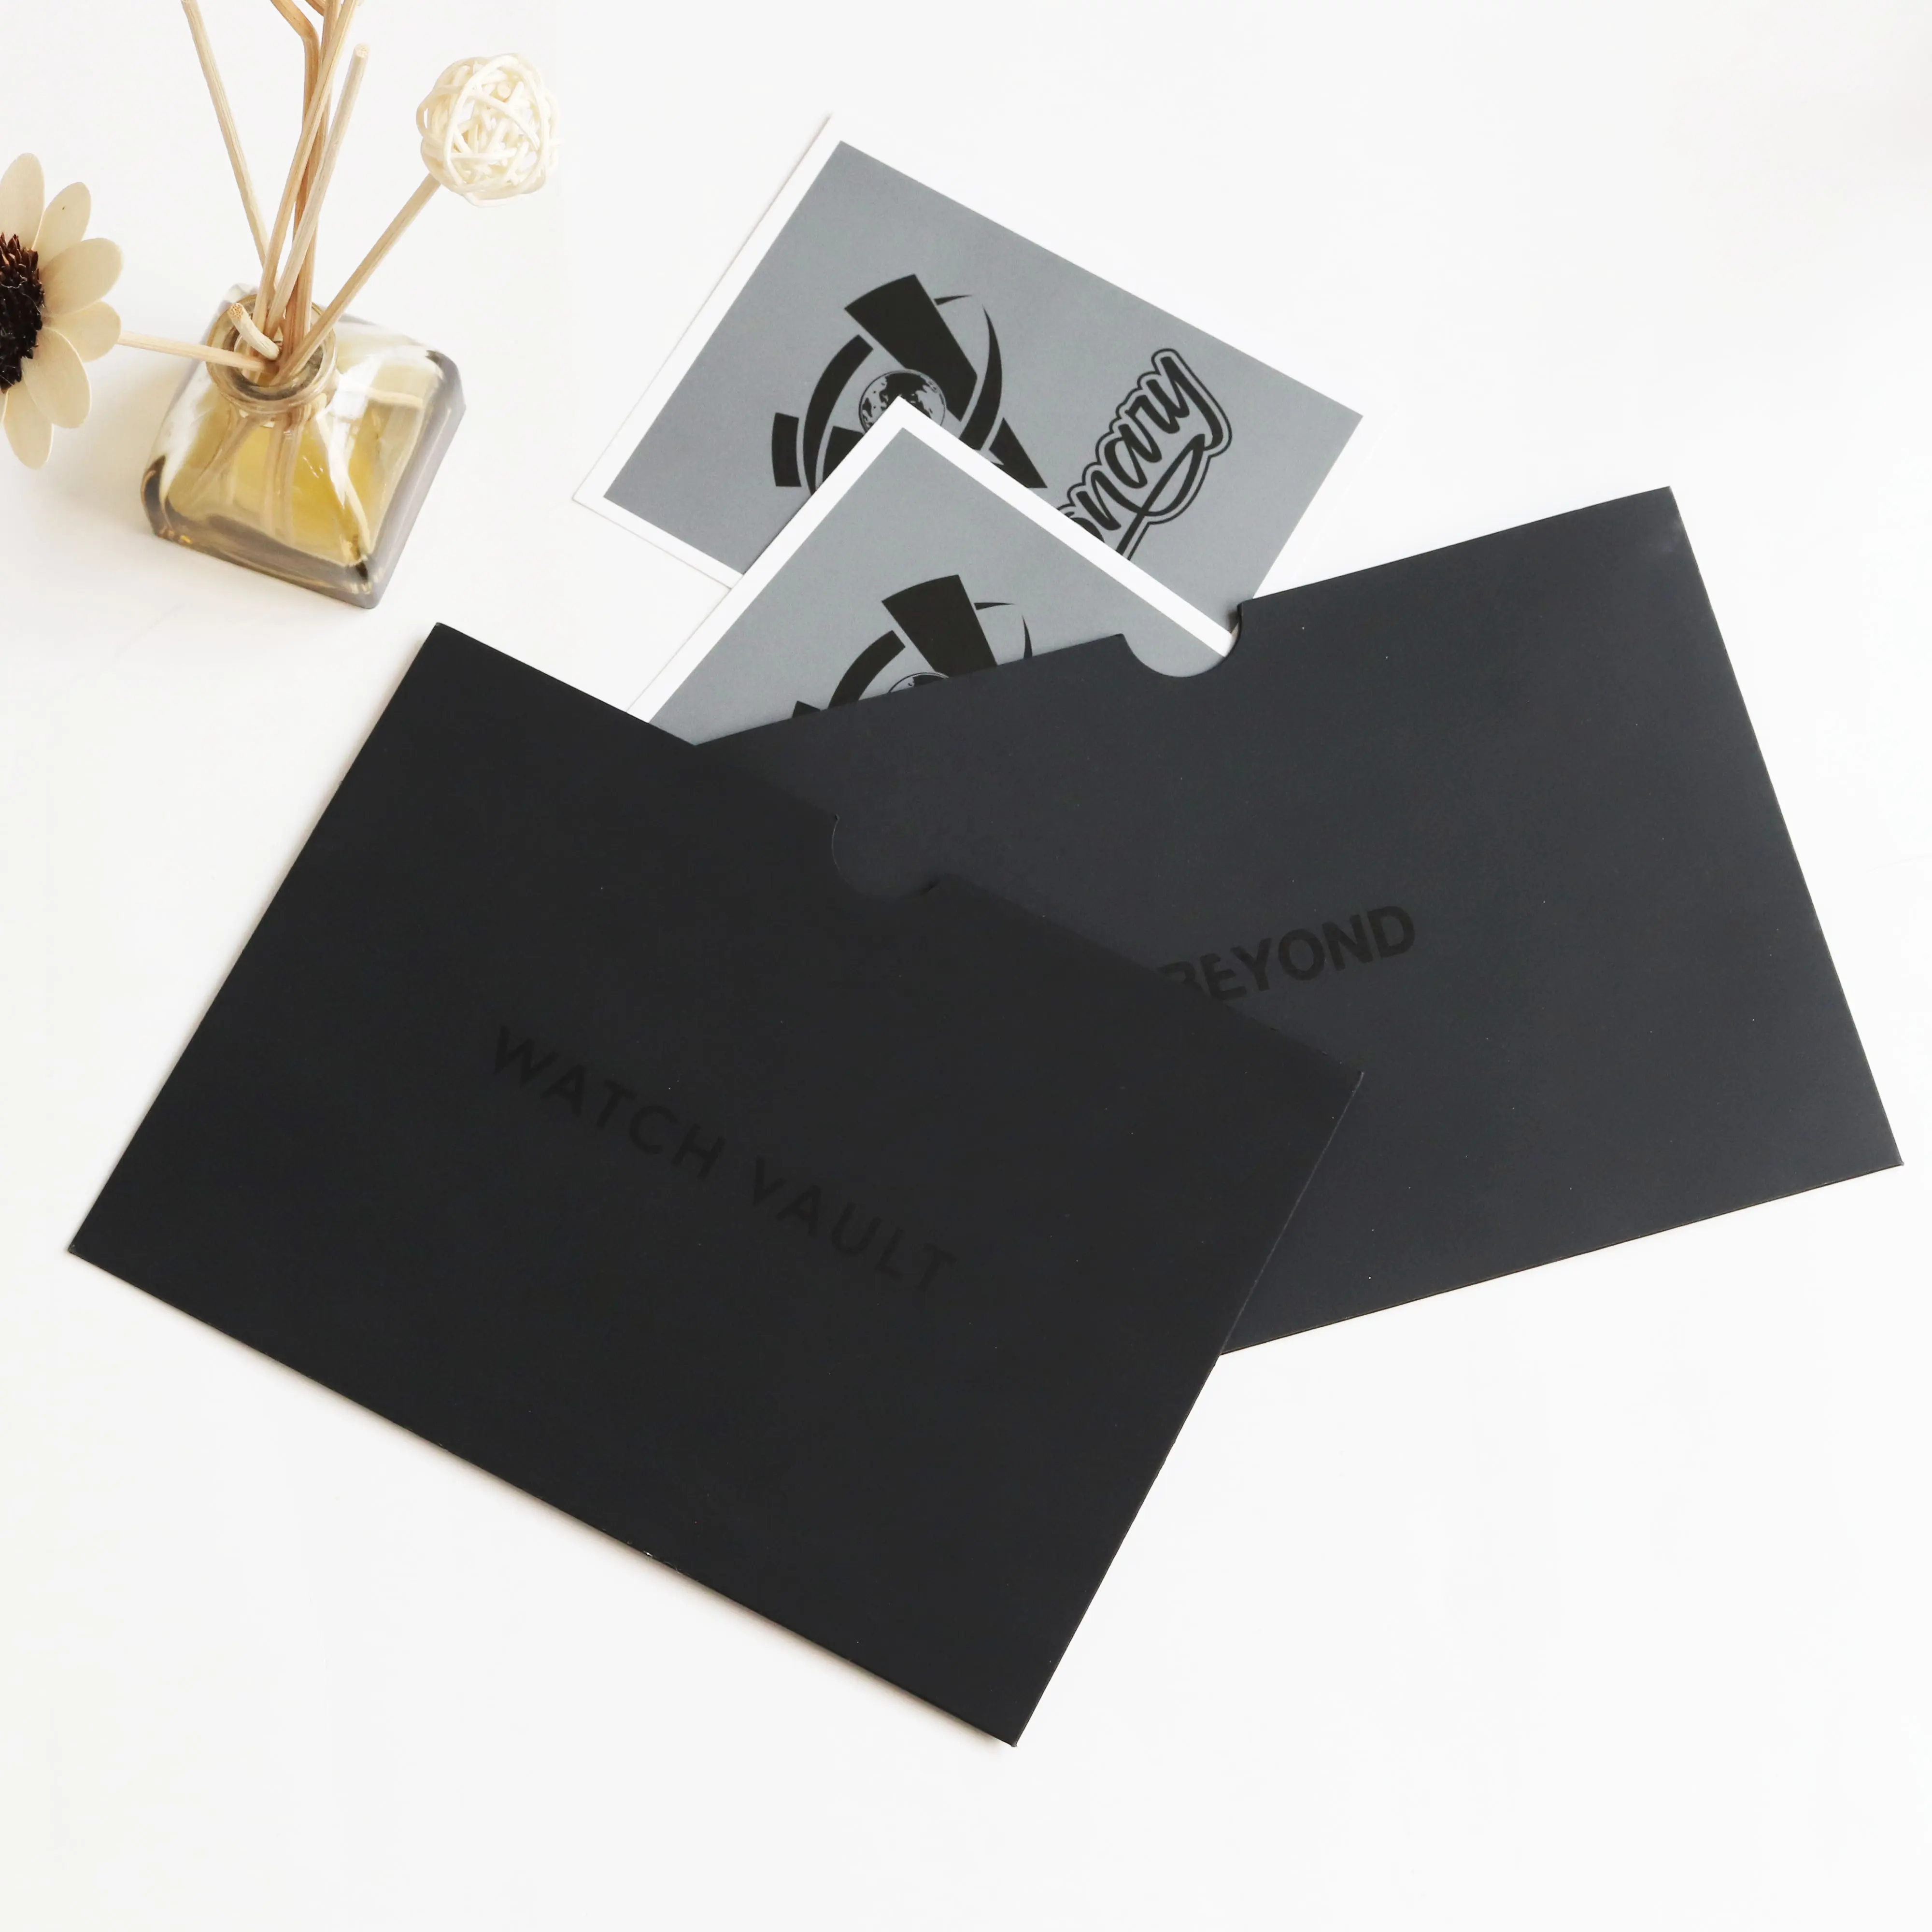 कस्टम काले लोगो मुद्रण प्रीमियर व्यापार लिफाफा मैट रेशम कपास कला कागज लिफाफा के साथ आप कार्ड धन्यवाद